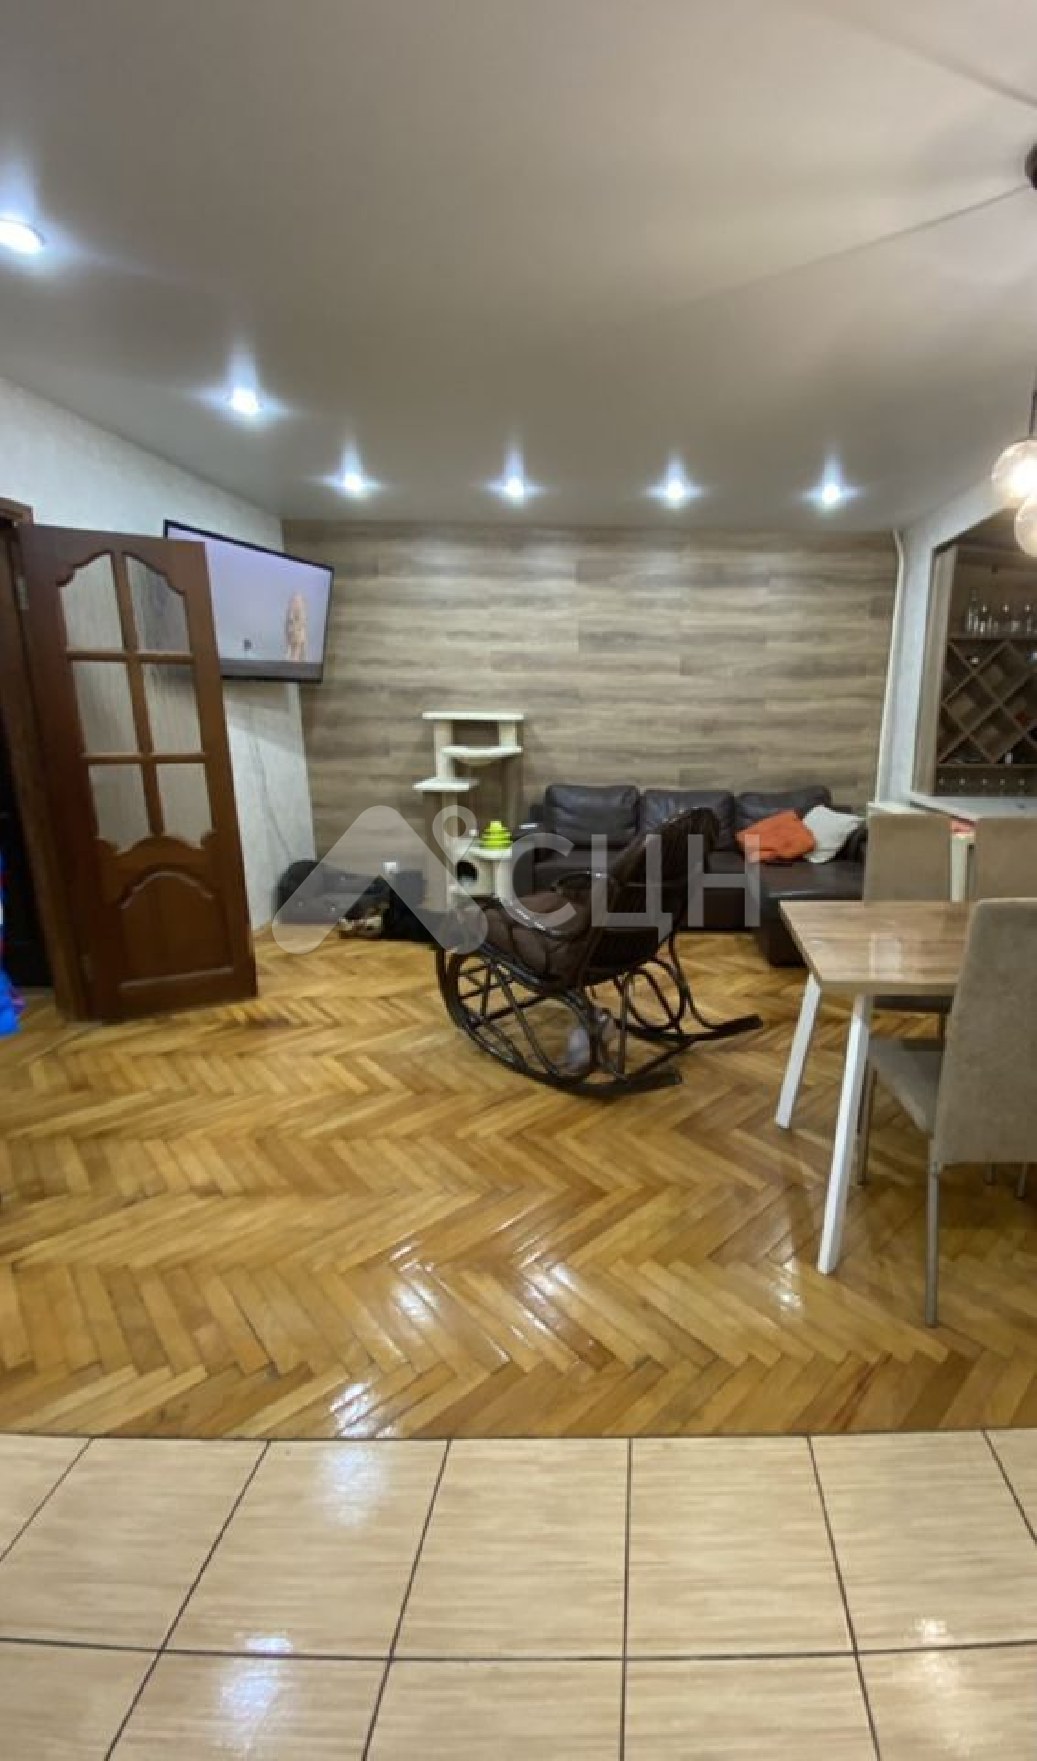 купить квартиру в сарове
: Г. Саров, улица Некрасова, 9, 3-комн квартира, этаж 7 из 9, продажа.